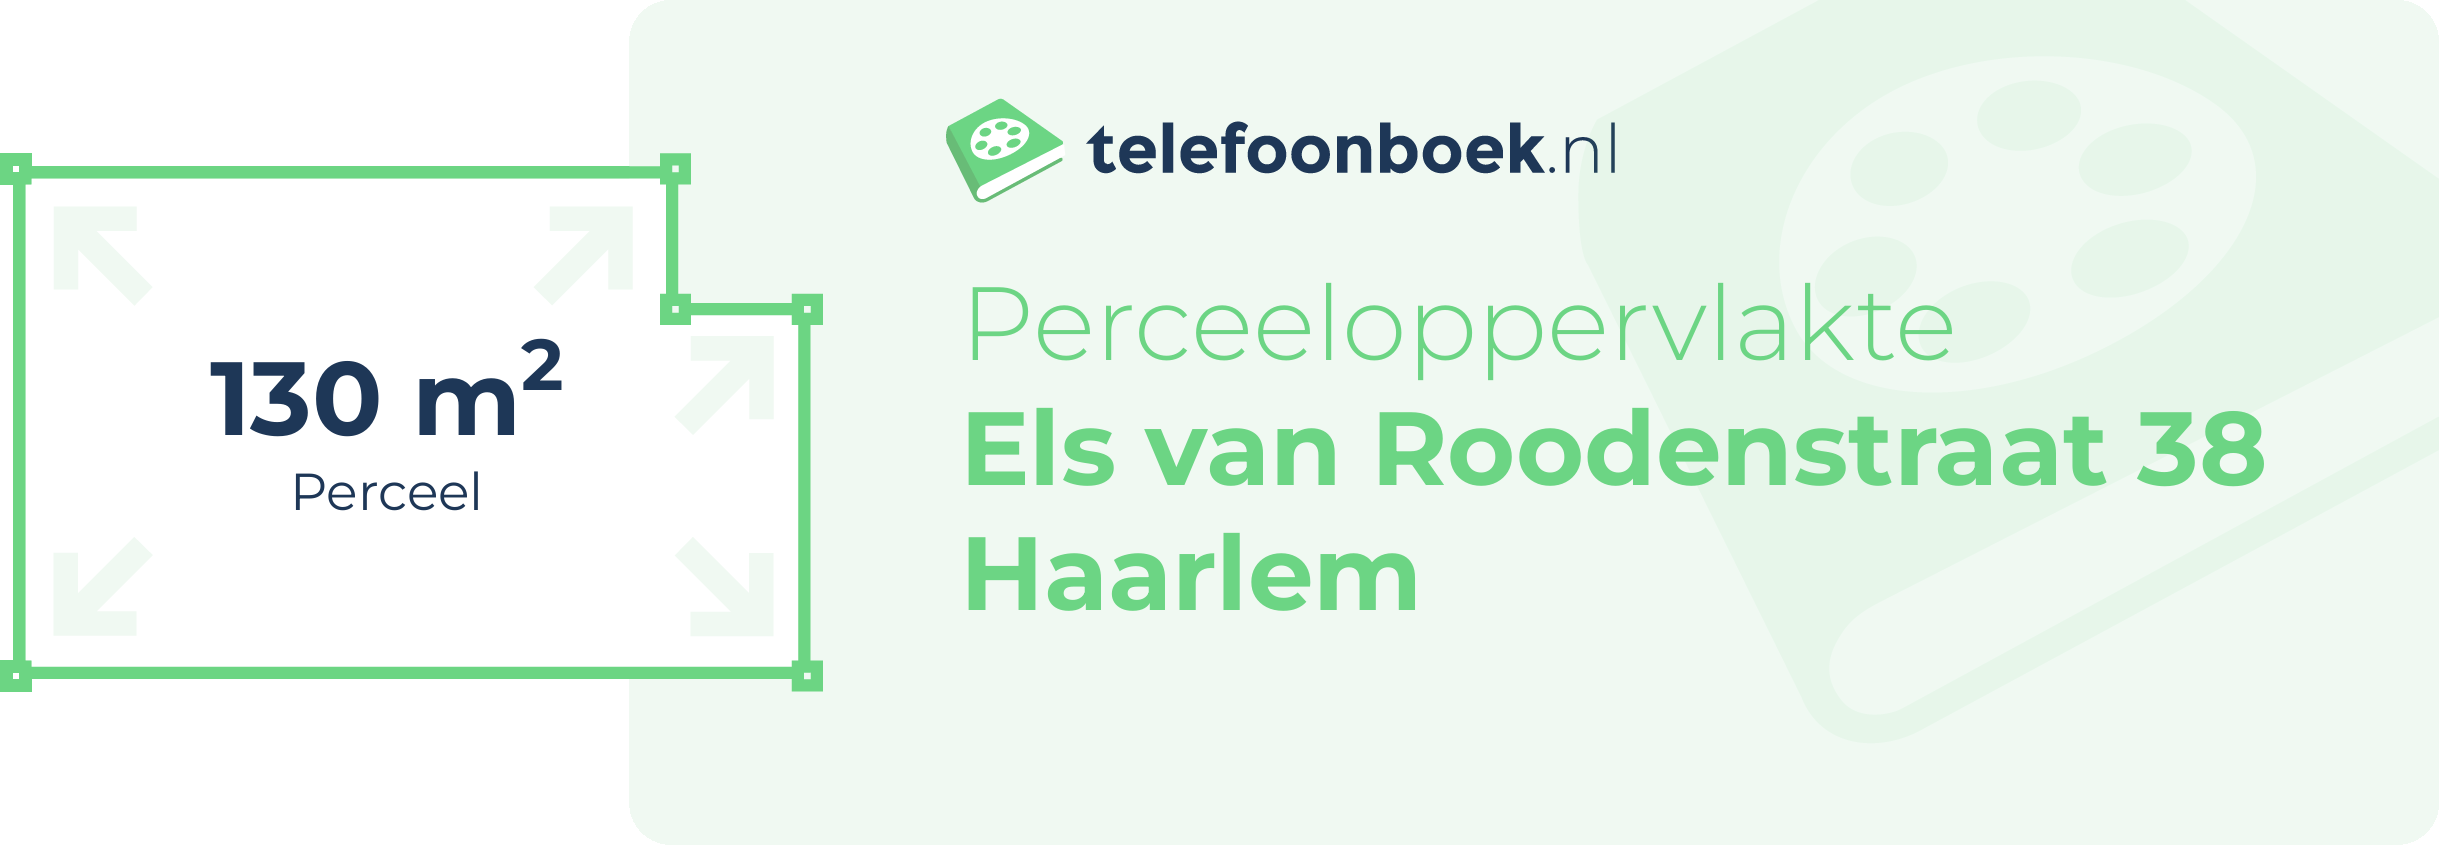 Perceeloppervlakte Els Van Roodenstraat 38 Haarlem